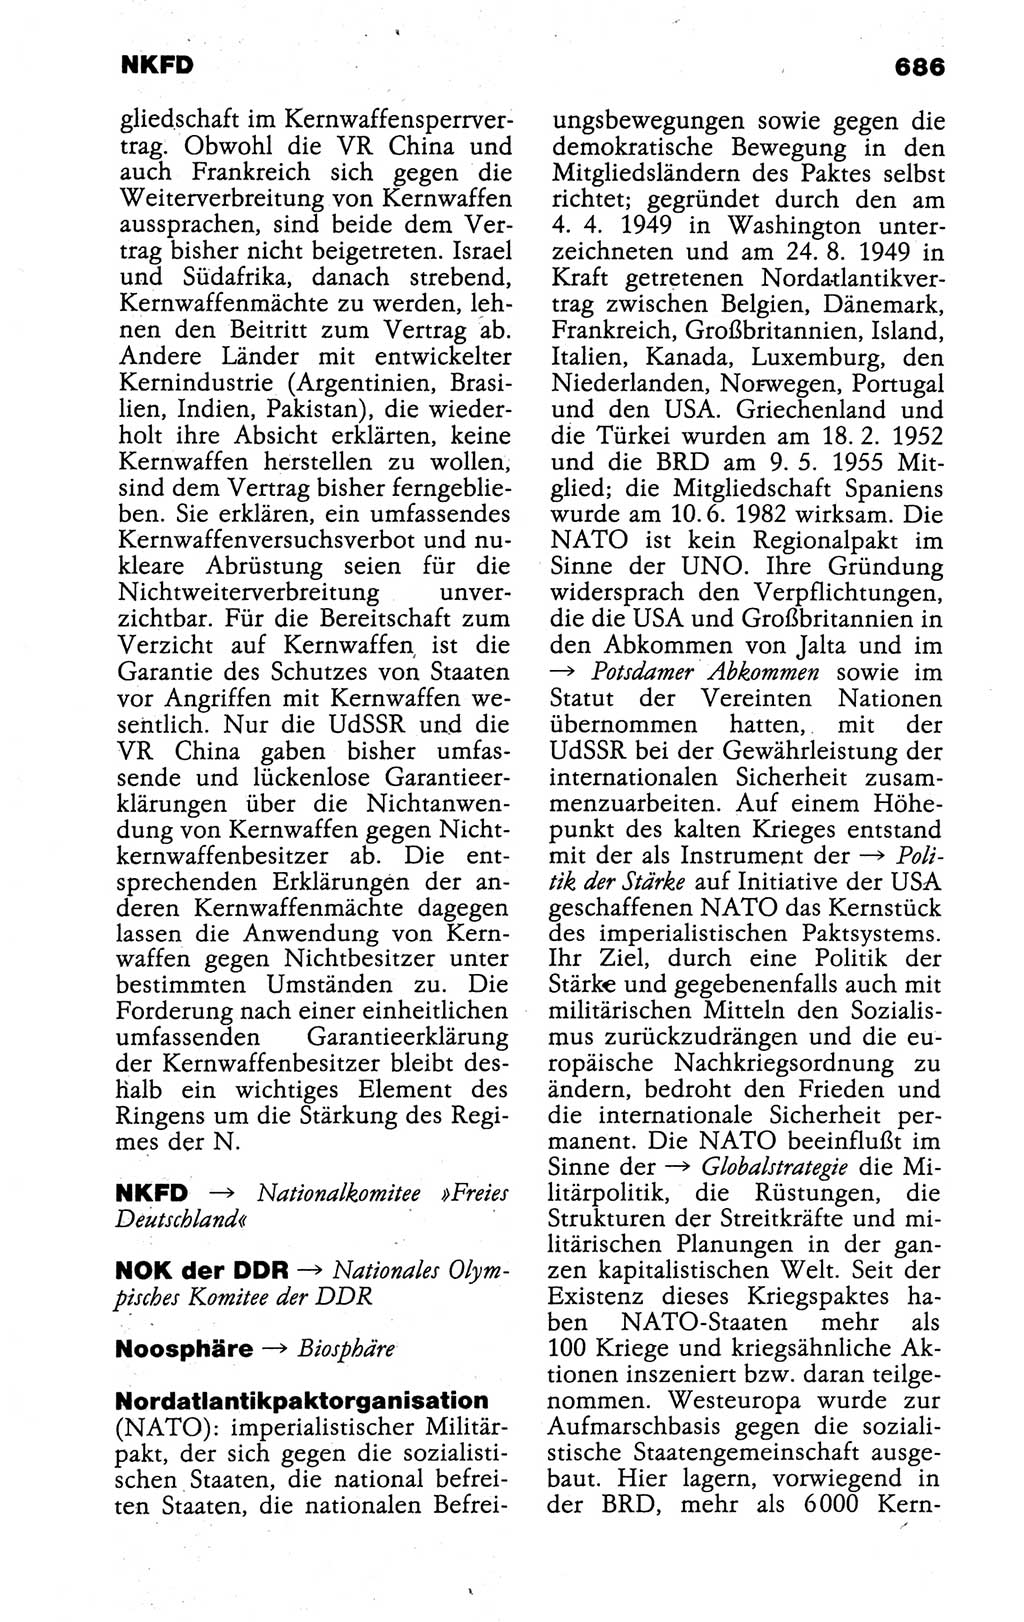 Kleines politisches Wörterbuch [Deutsche Demokratische Republik (DDR)] 1988, Seite 686 (Kl. pol. Wb. DDR 1988, S. 686)